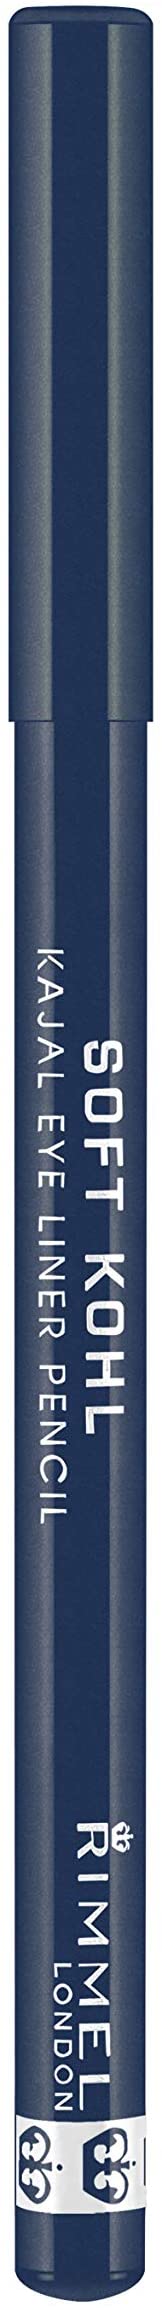 Rimmel London Soft Kohl Smudge-proof Eyeliner Pencil Blue